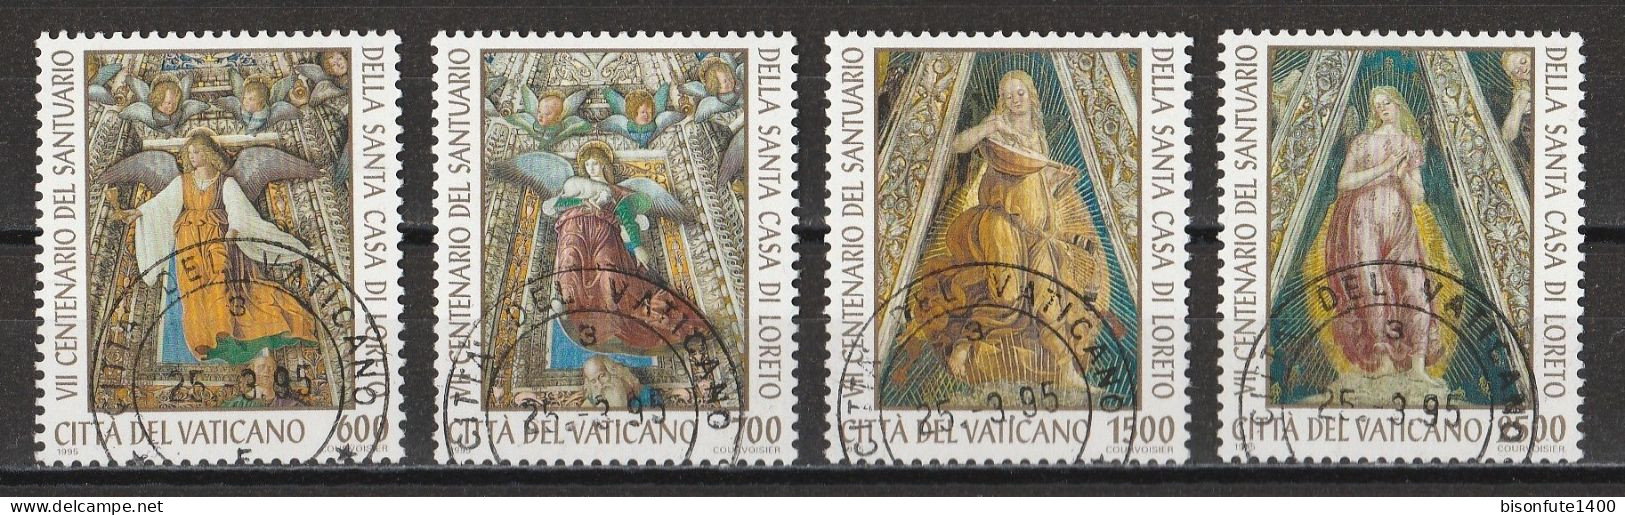 Vatican 1995 : Timbres Yvert & Tellier N° 1000 - 1001 - 1002 Et 1003 Oblitérés - Oblitérés